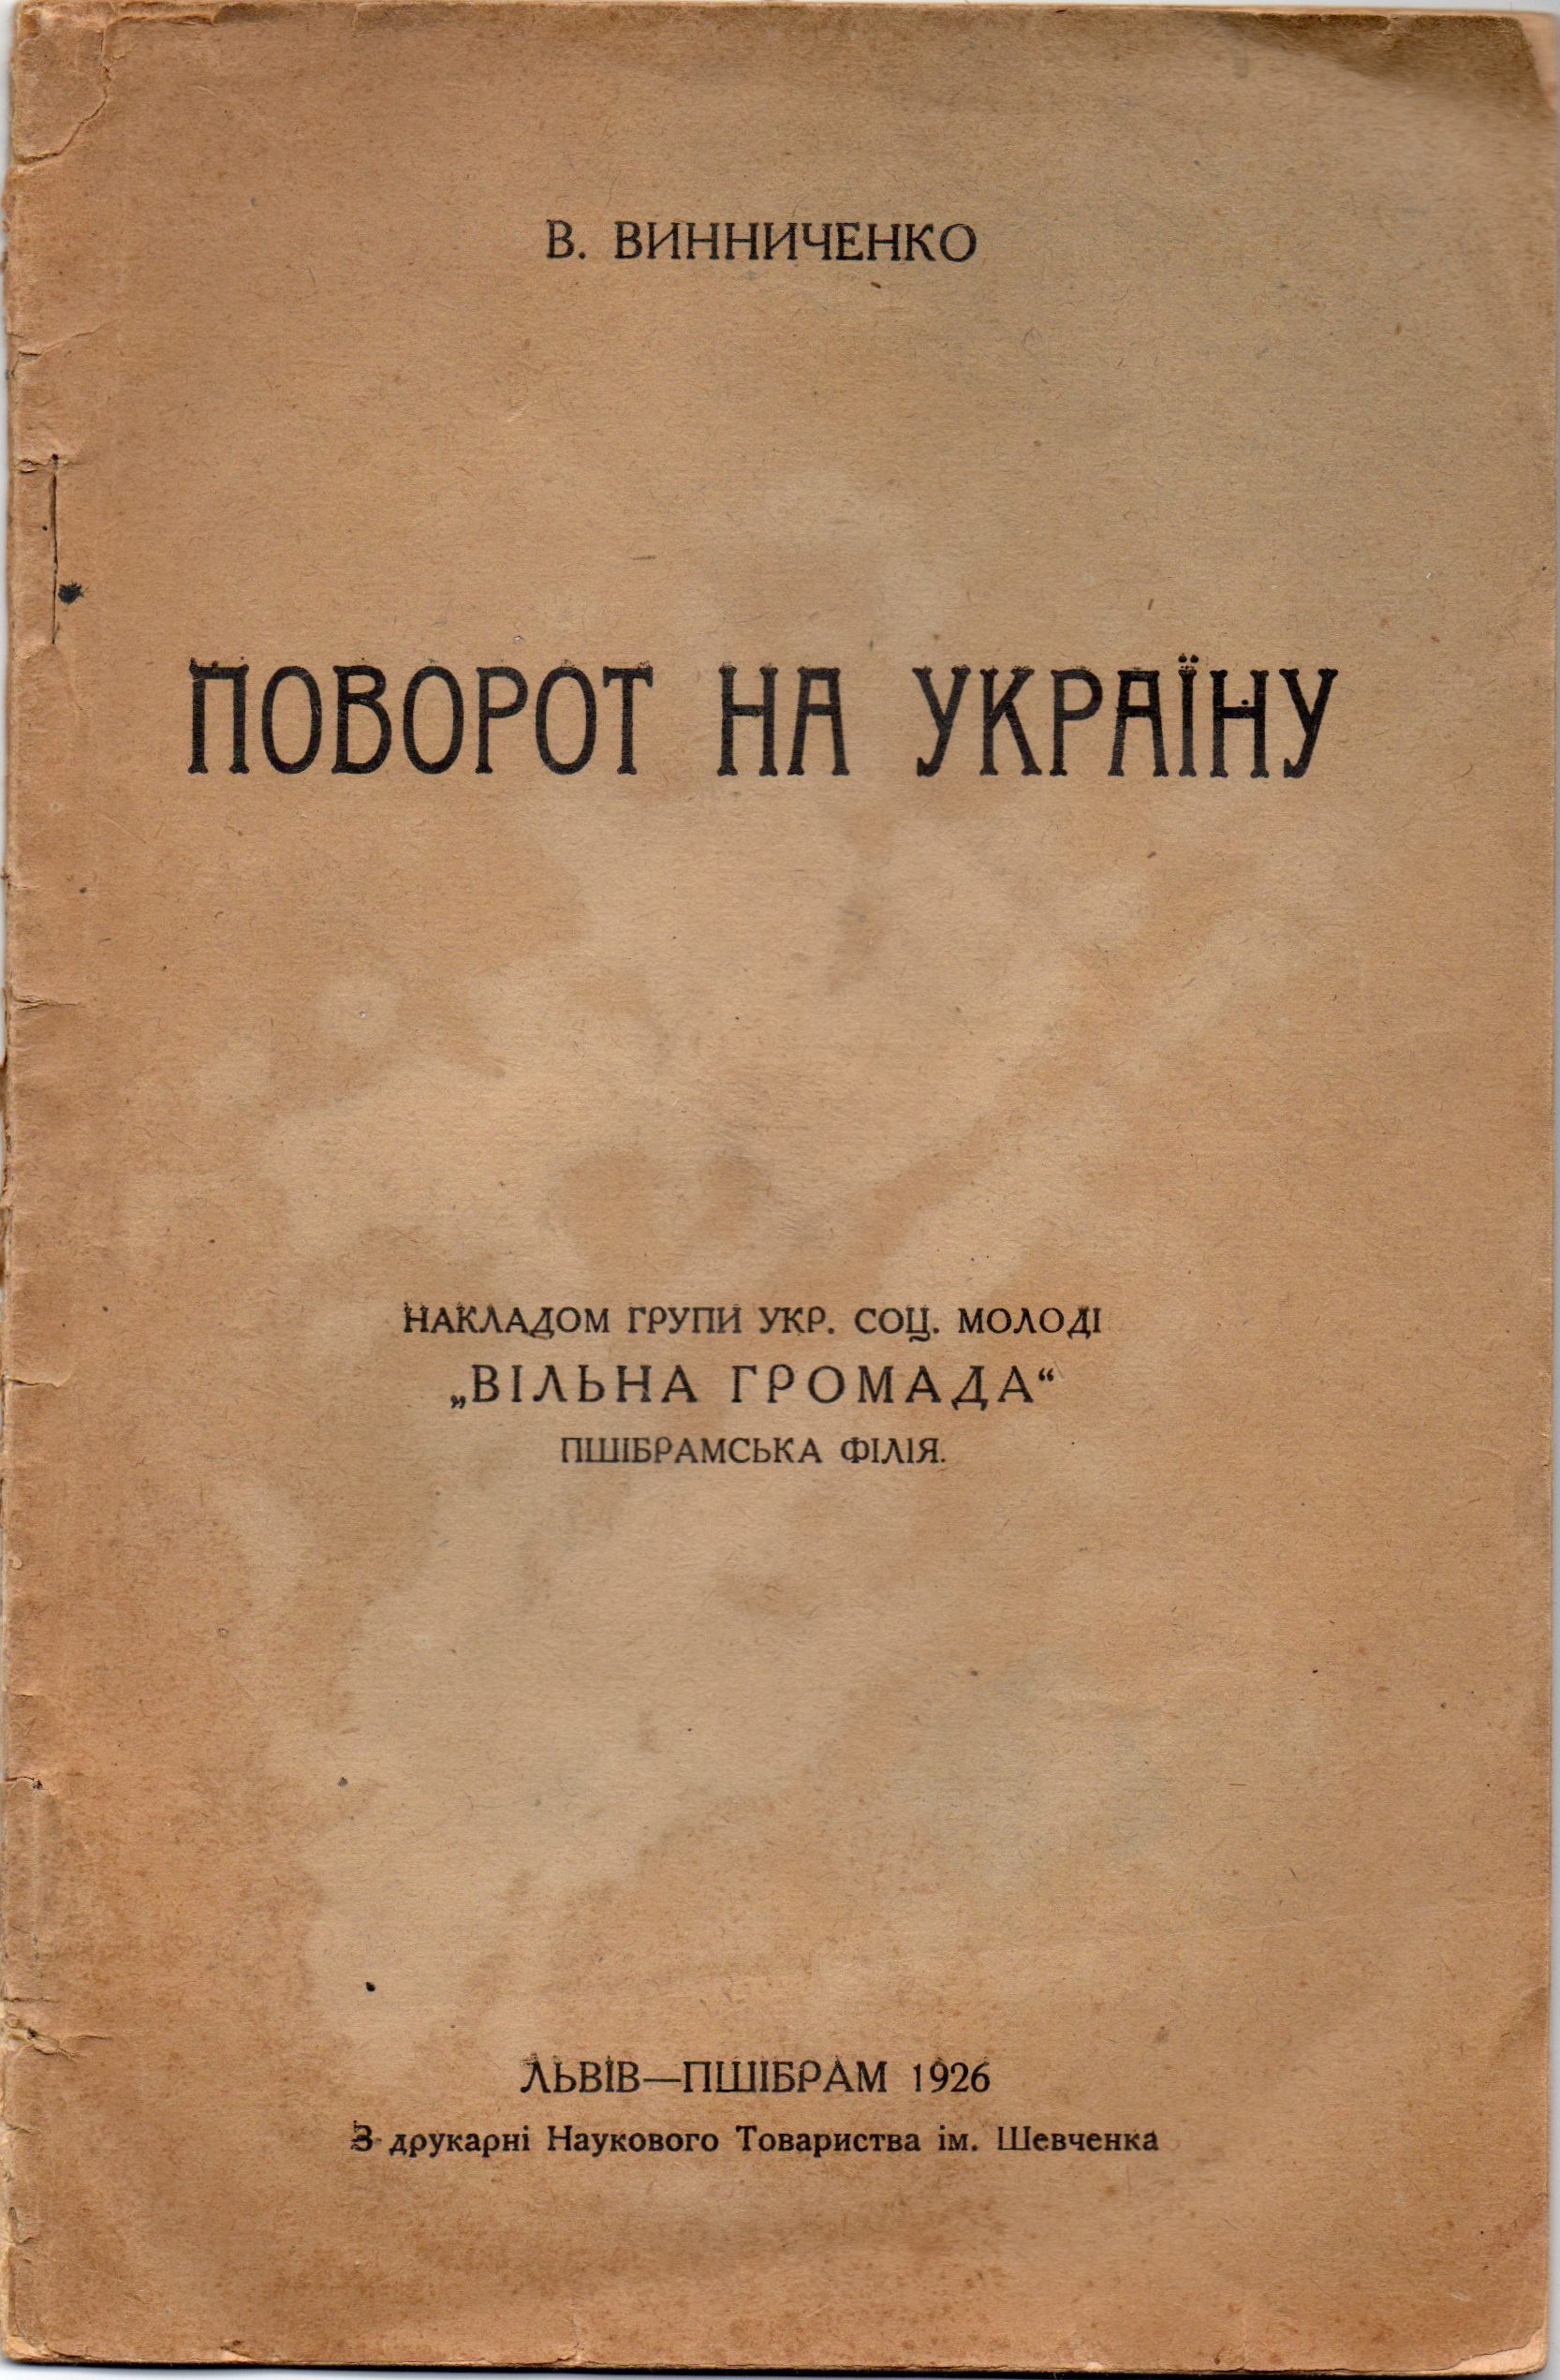 Книга "Винниченко В. "Поворот на Україну"